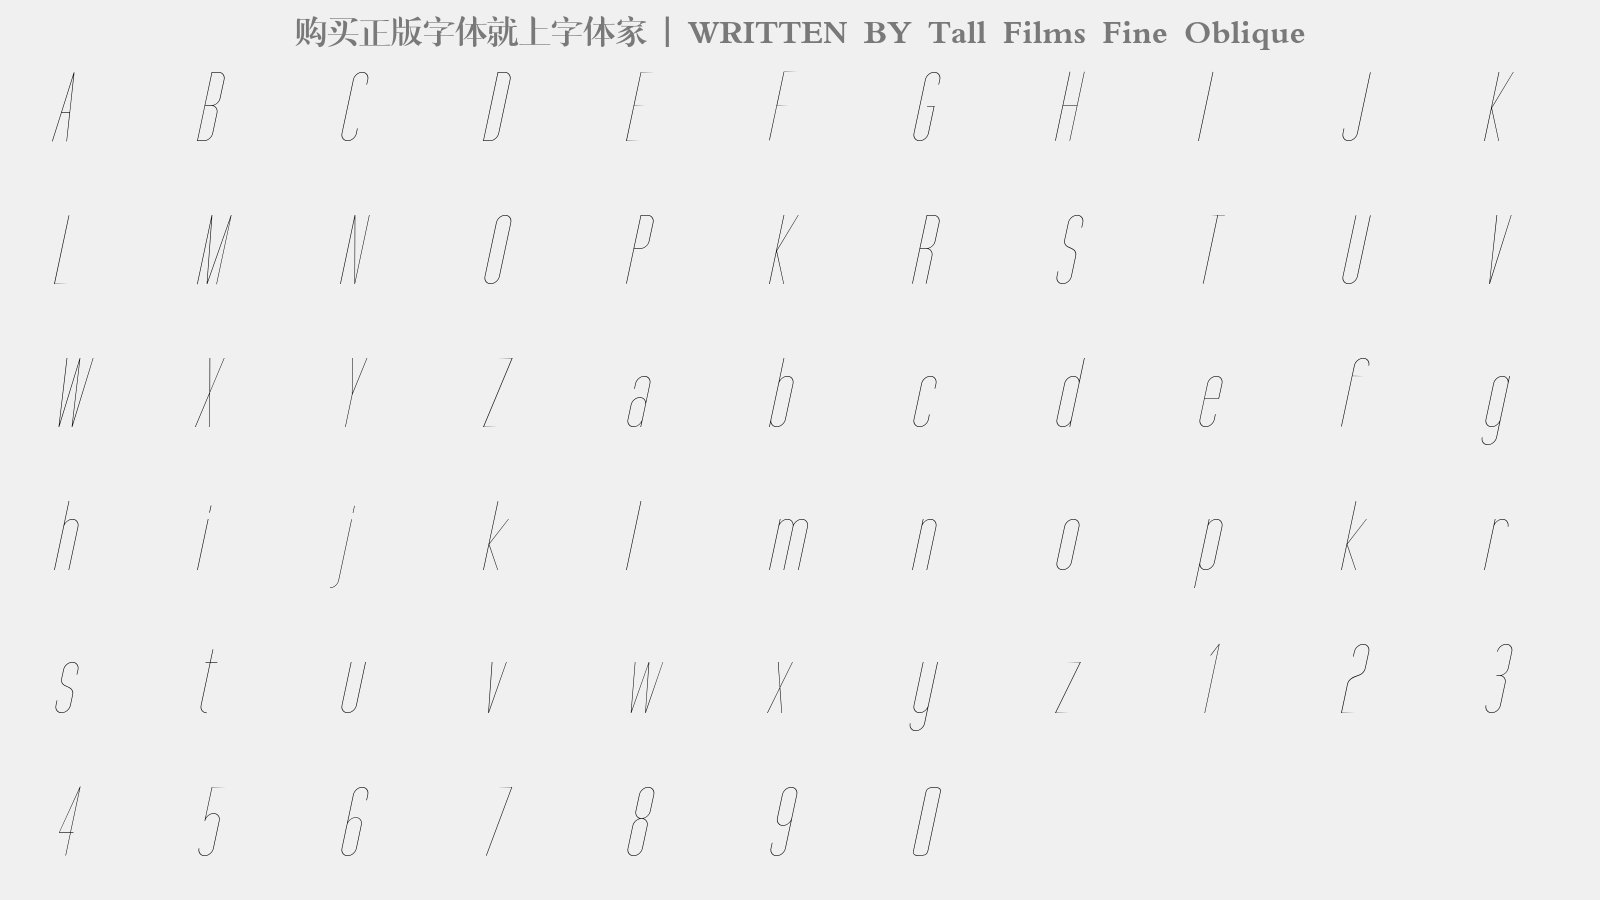 Tall Films Fine Oblique - 大写字母/小写字母/数字